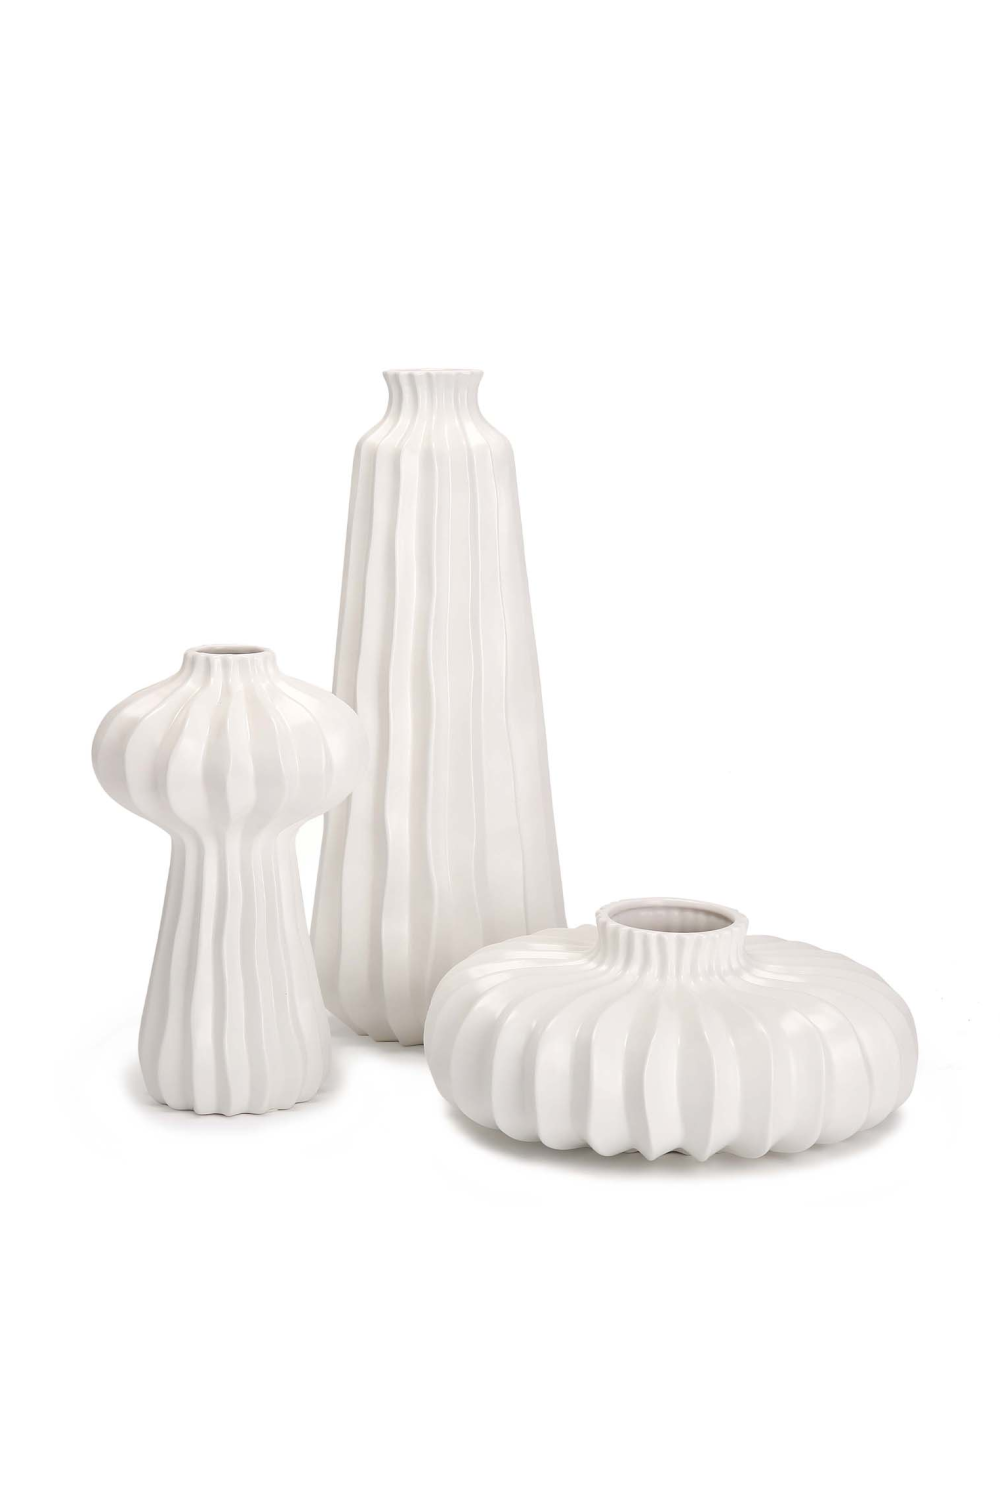 White Ceramic Modern Vase | Liang & Eimil Gourd II | OROA.com